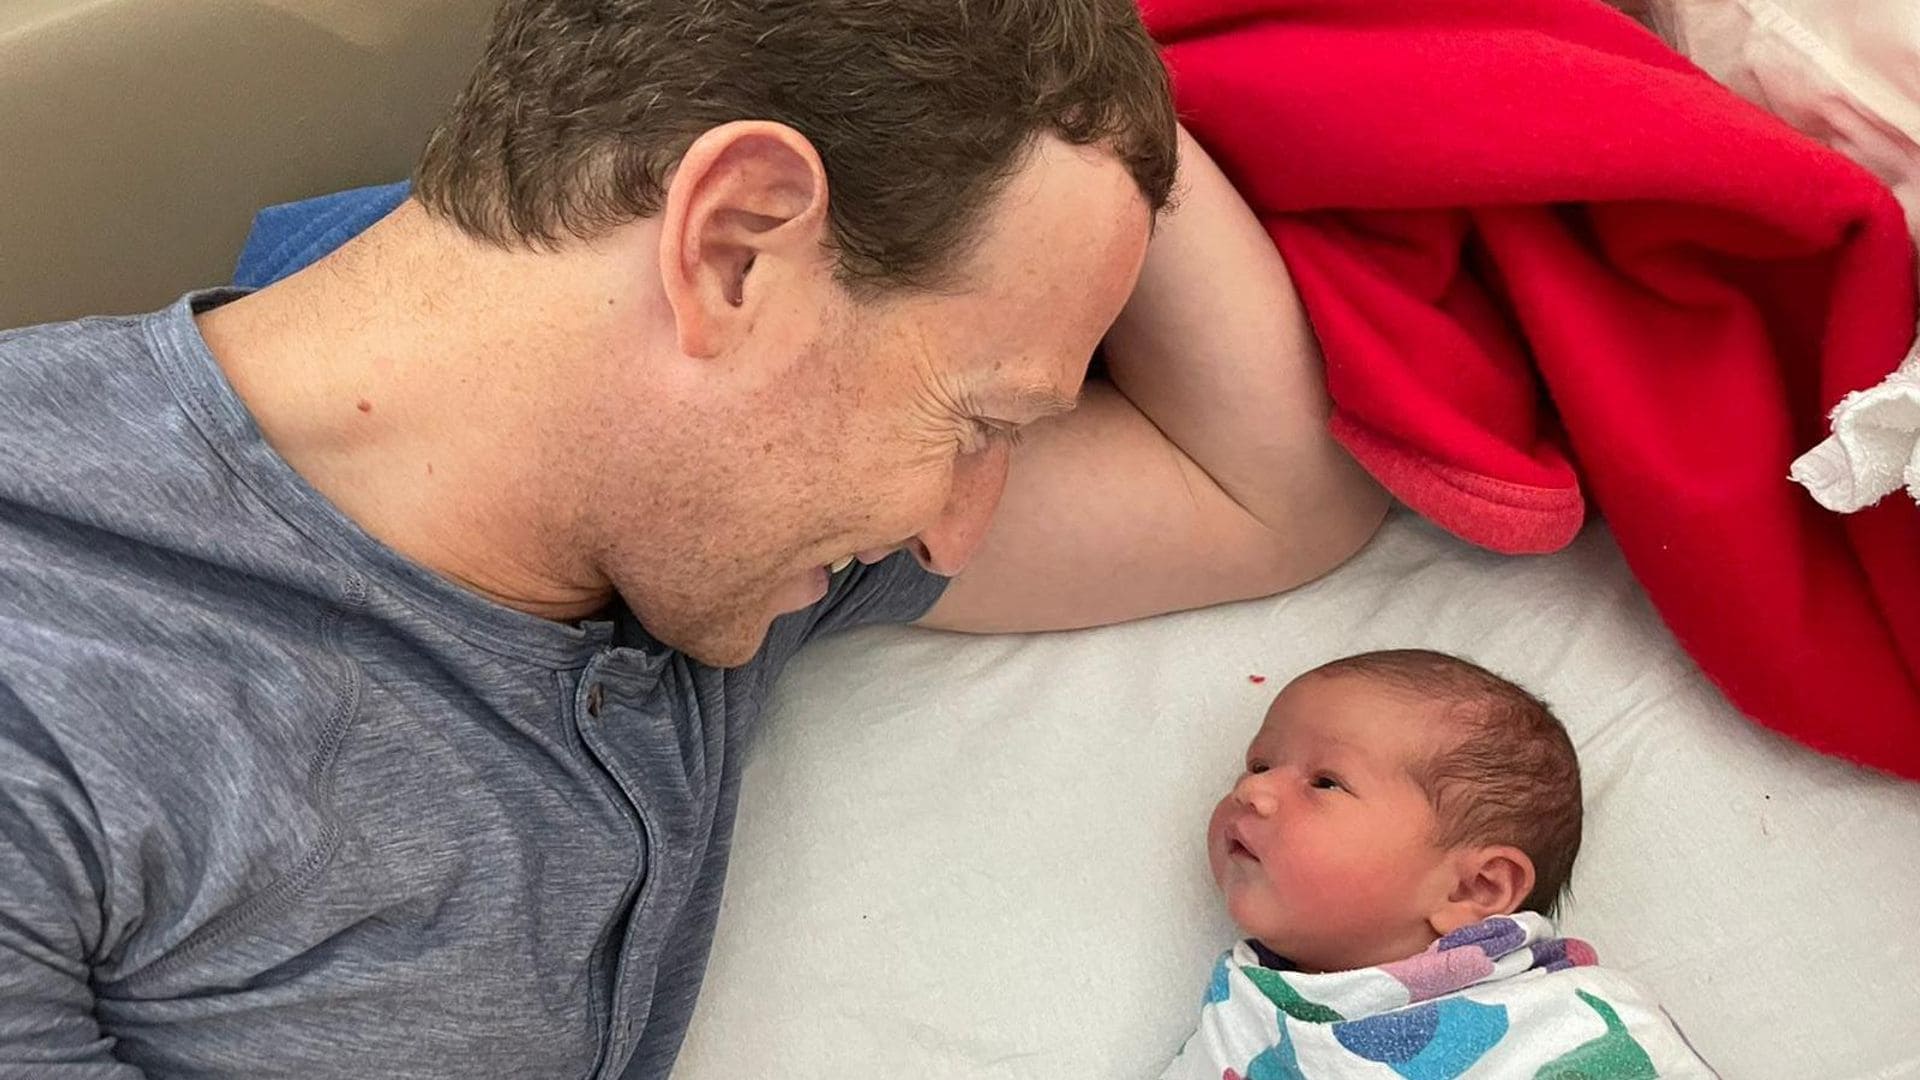 Mark Zuckerberg y Priscilla Chan dan la bienvenida a su tercera hija